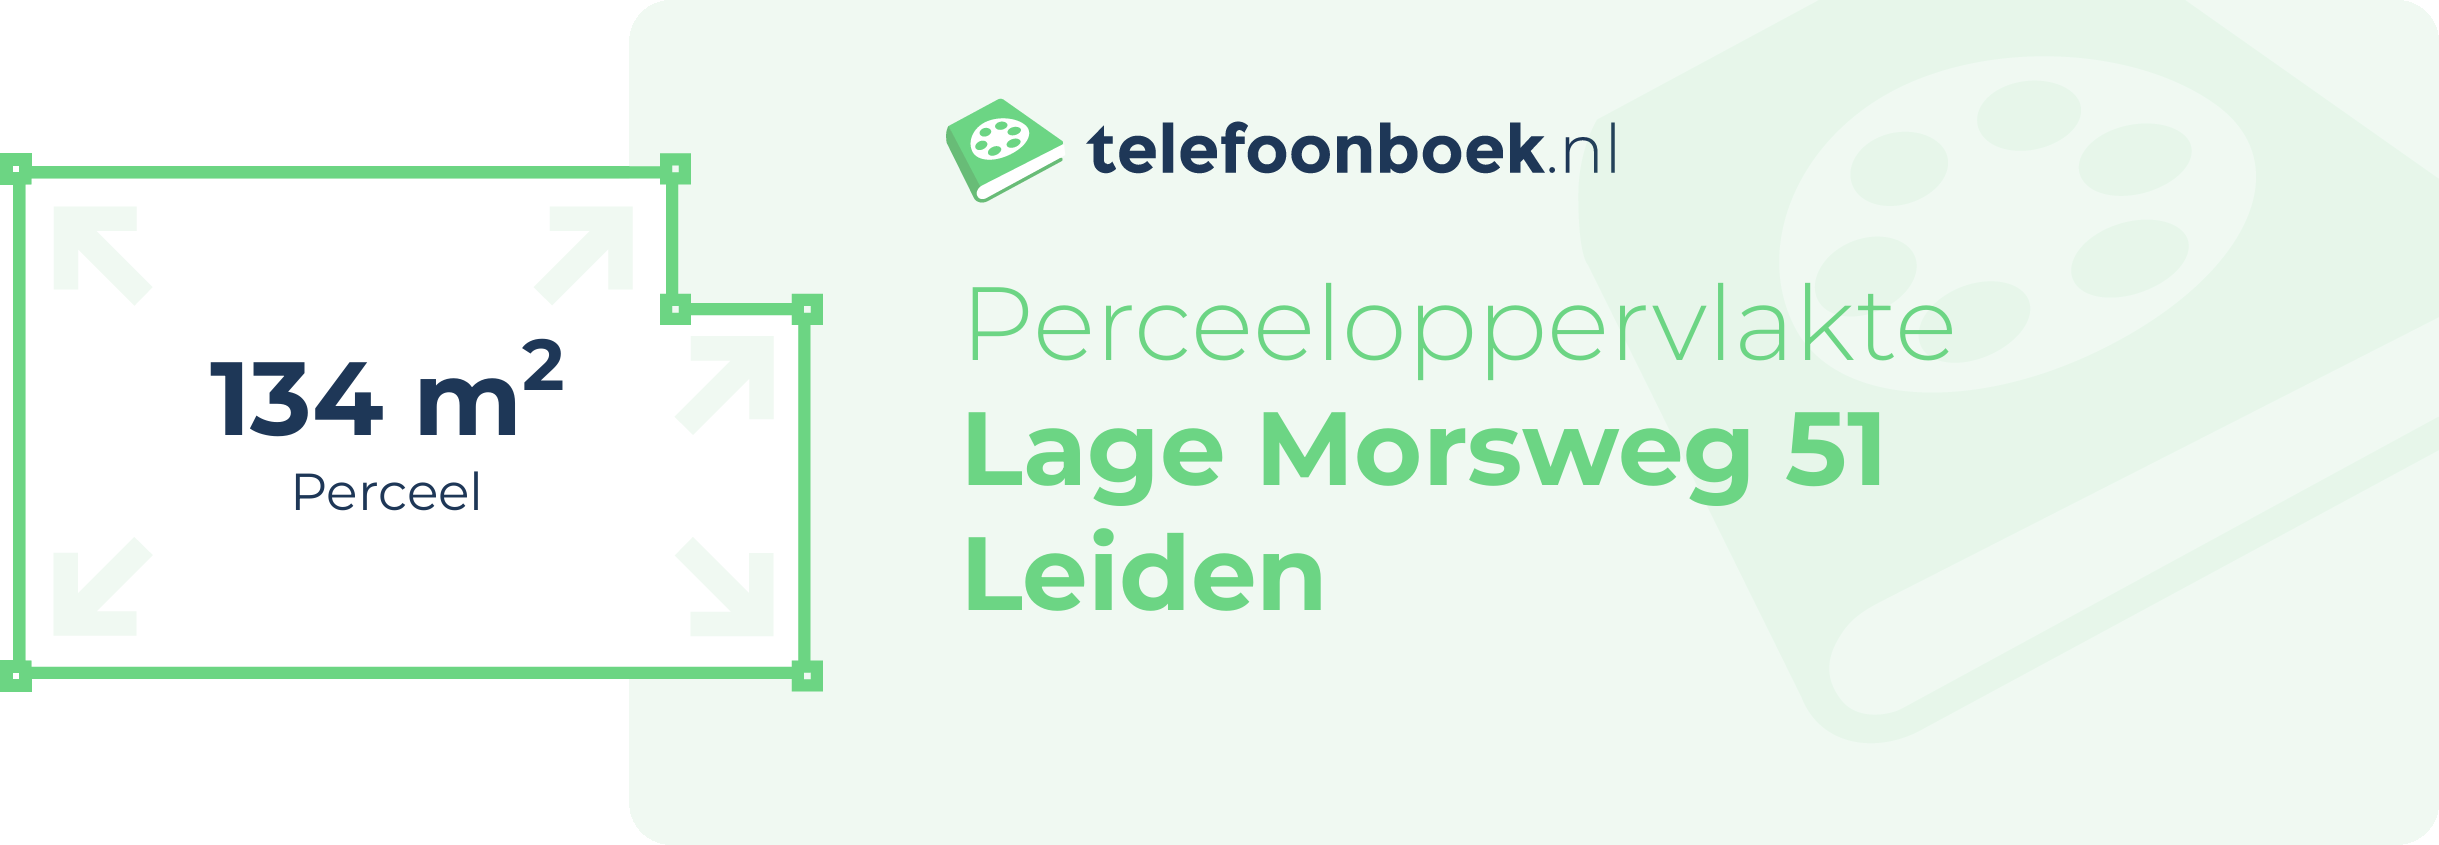 Perceeloppervlakte Lage Morsweg 51 Leiden